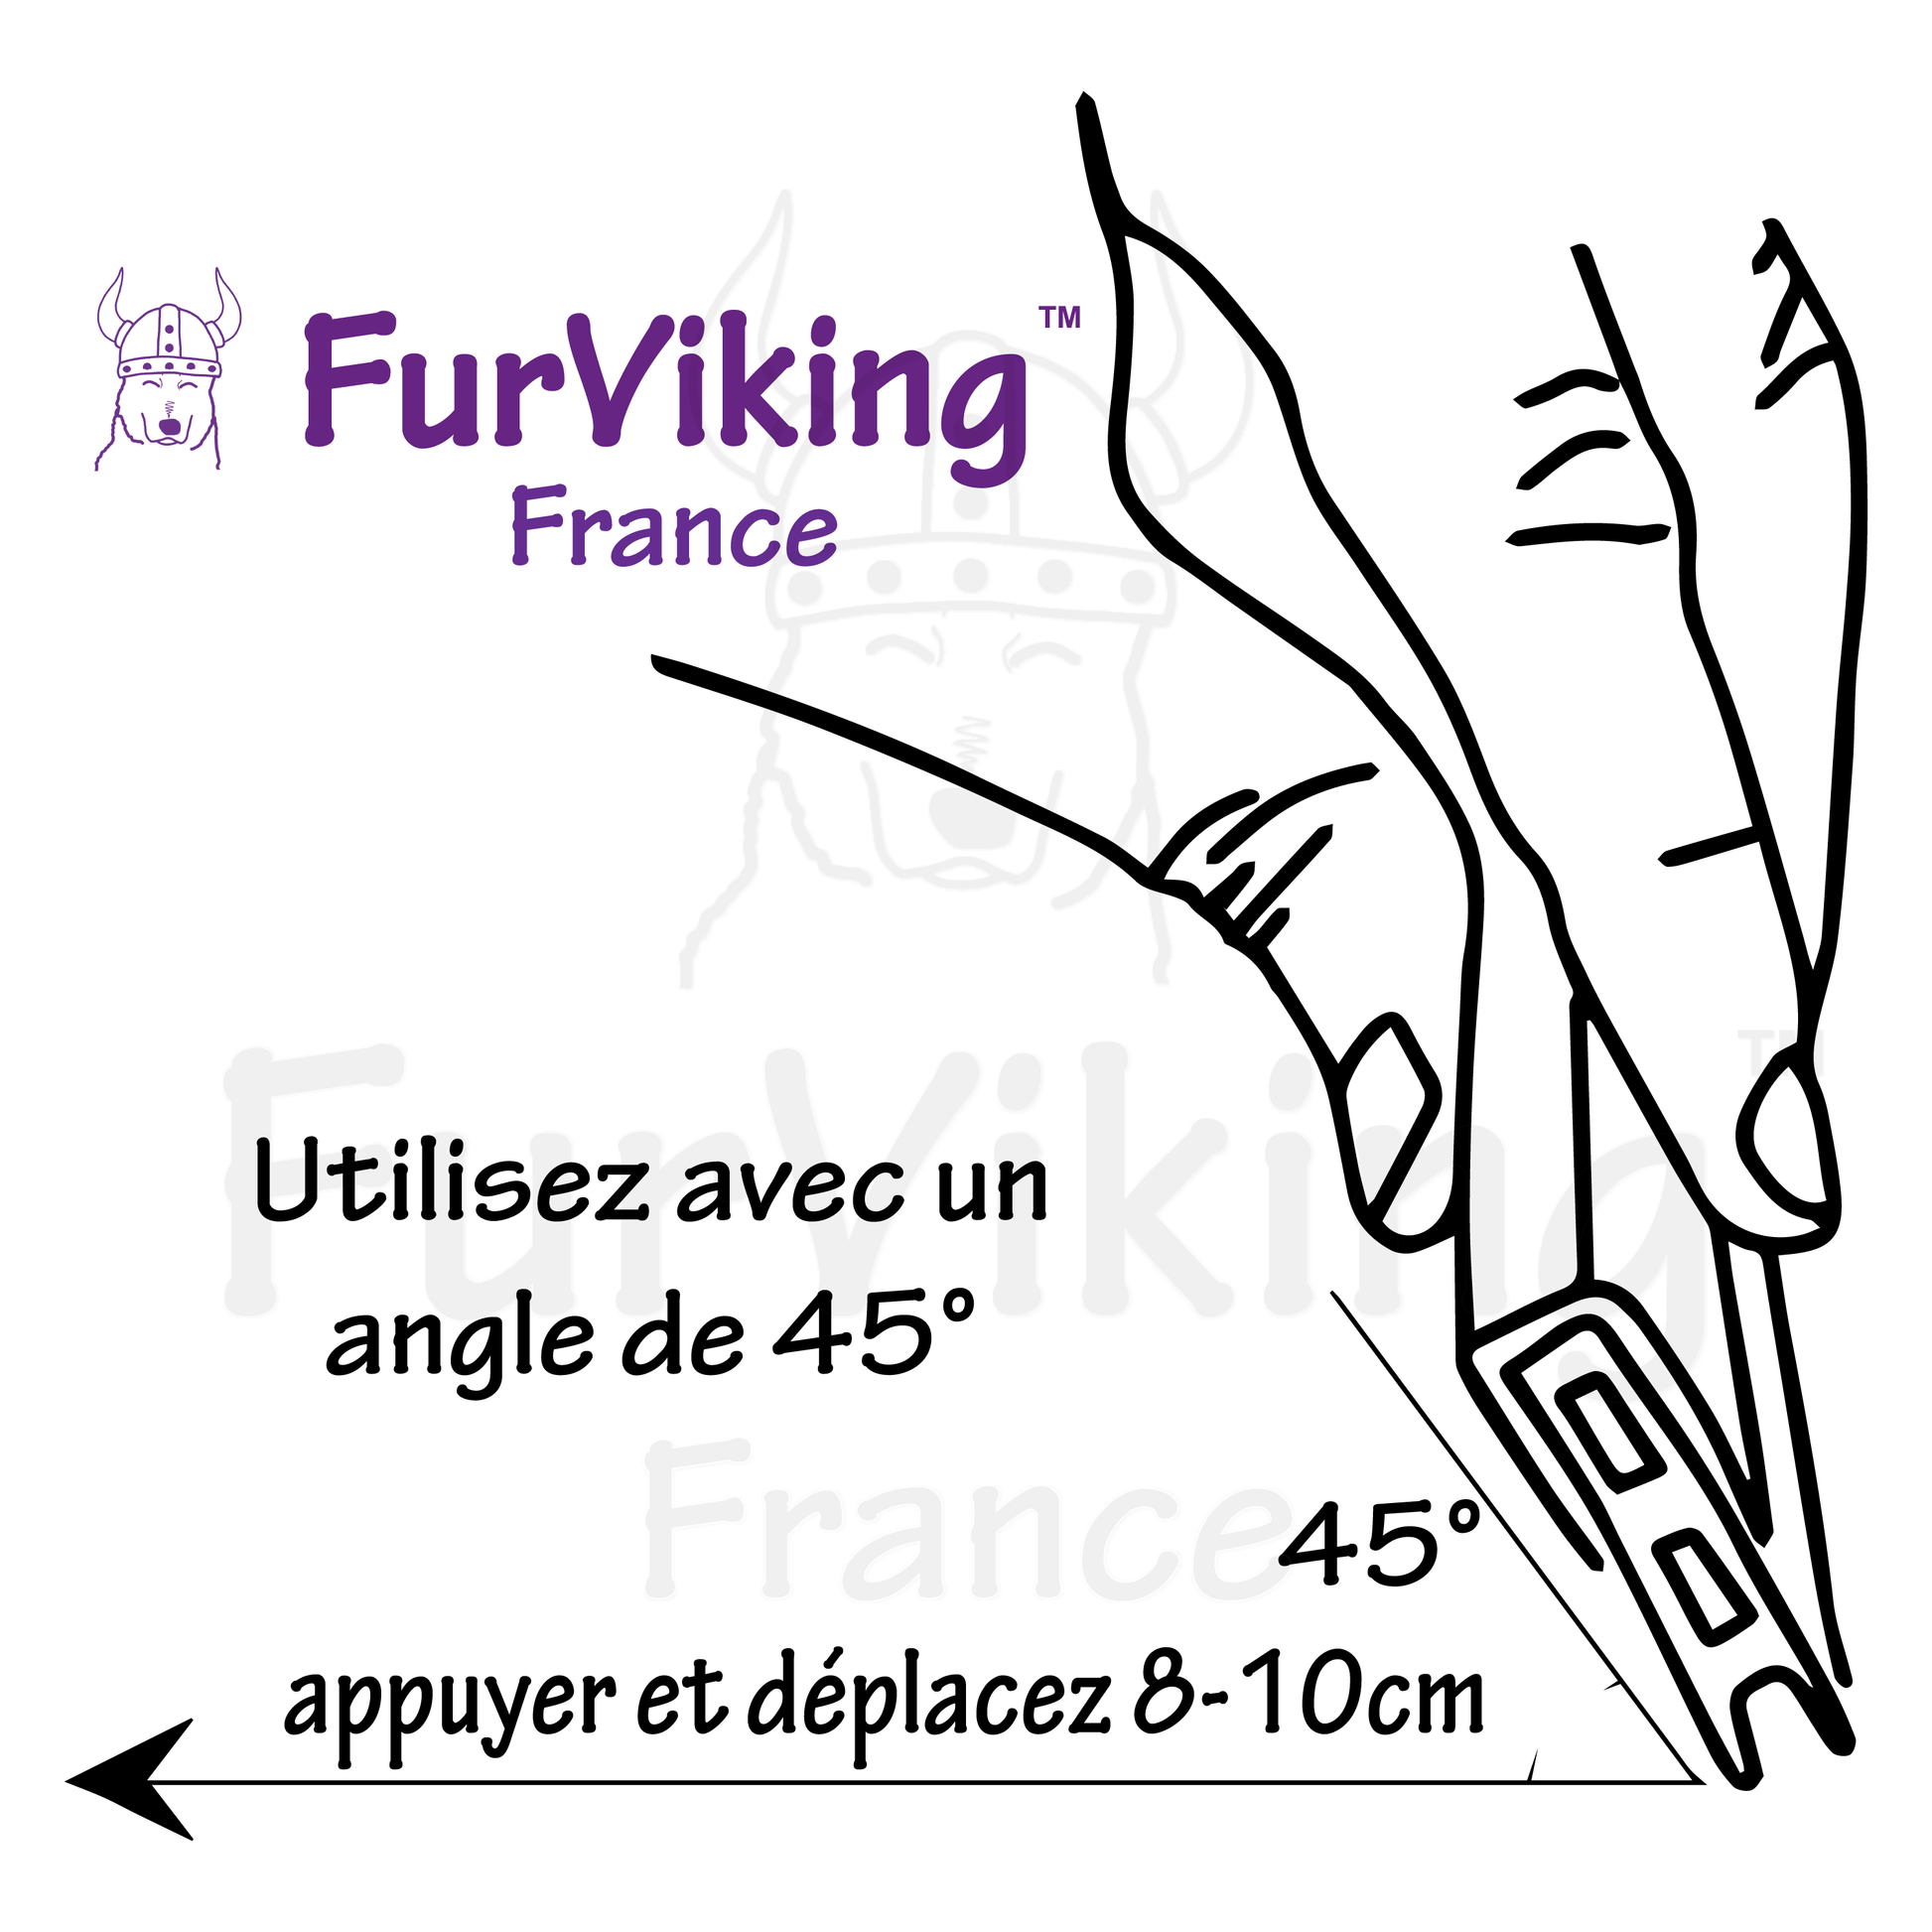 Comment utiliser le FurViking ?